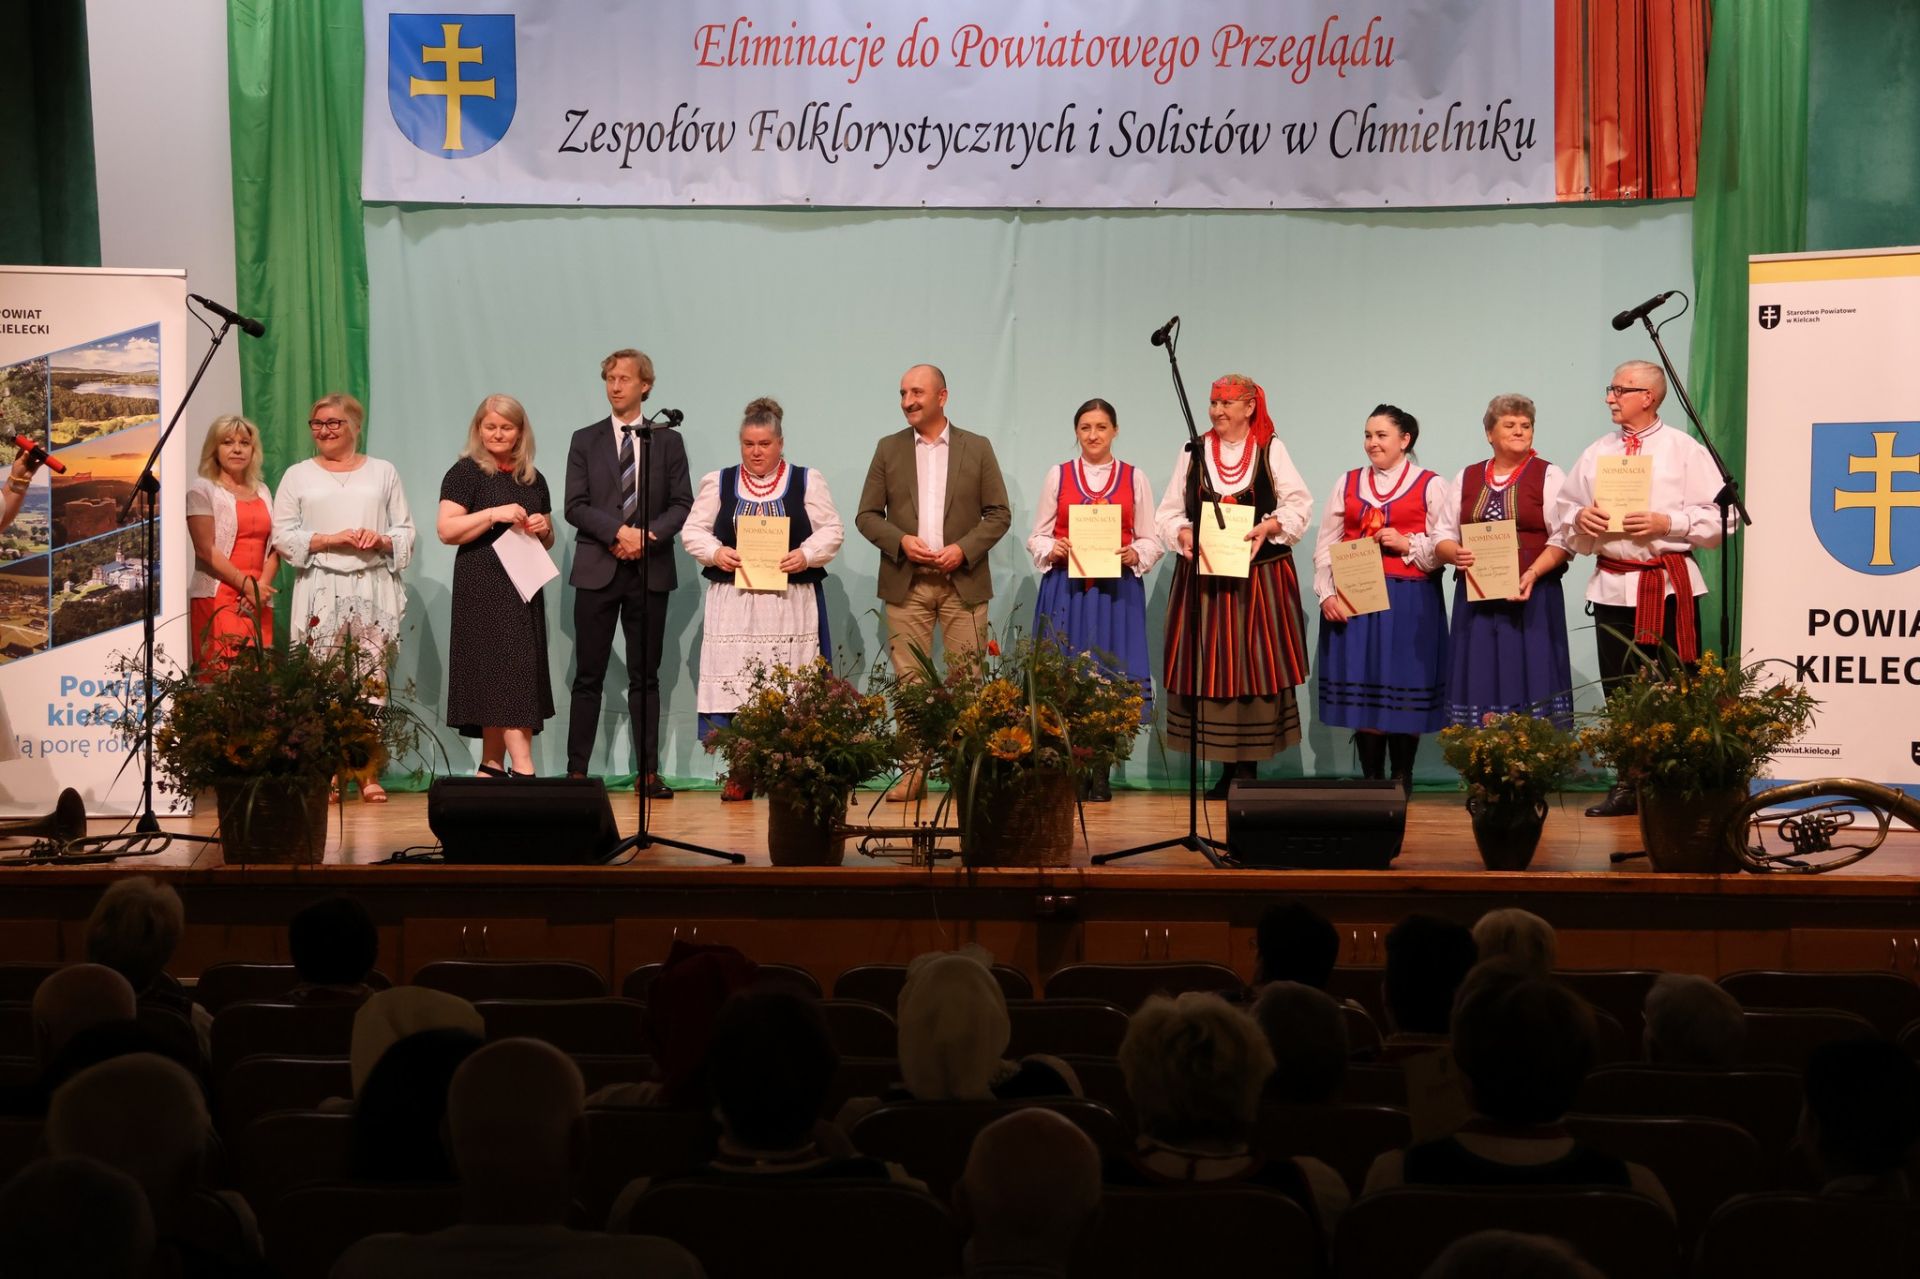 Nominowani do Powiatowego Przeglądu Zespołów Folklorystycznych i Solistów w Chmielniku